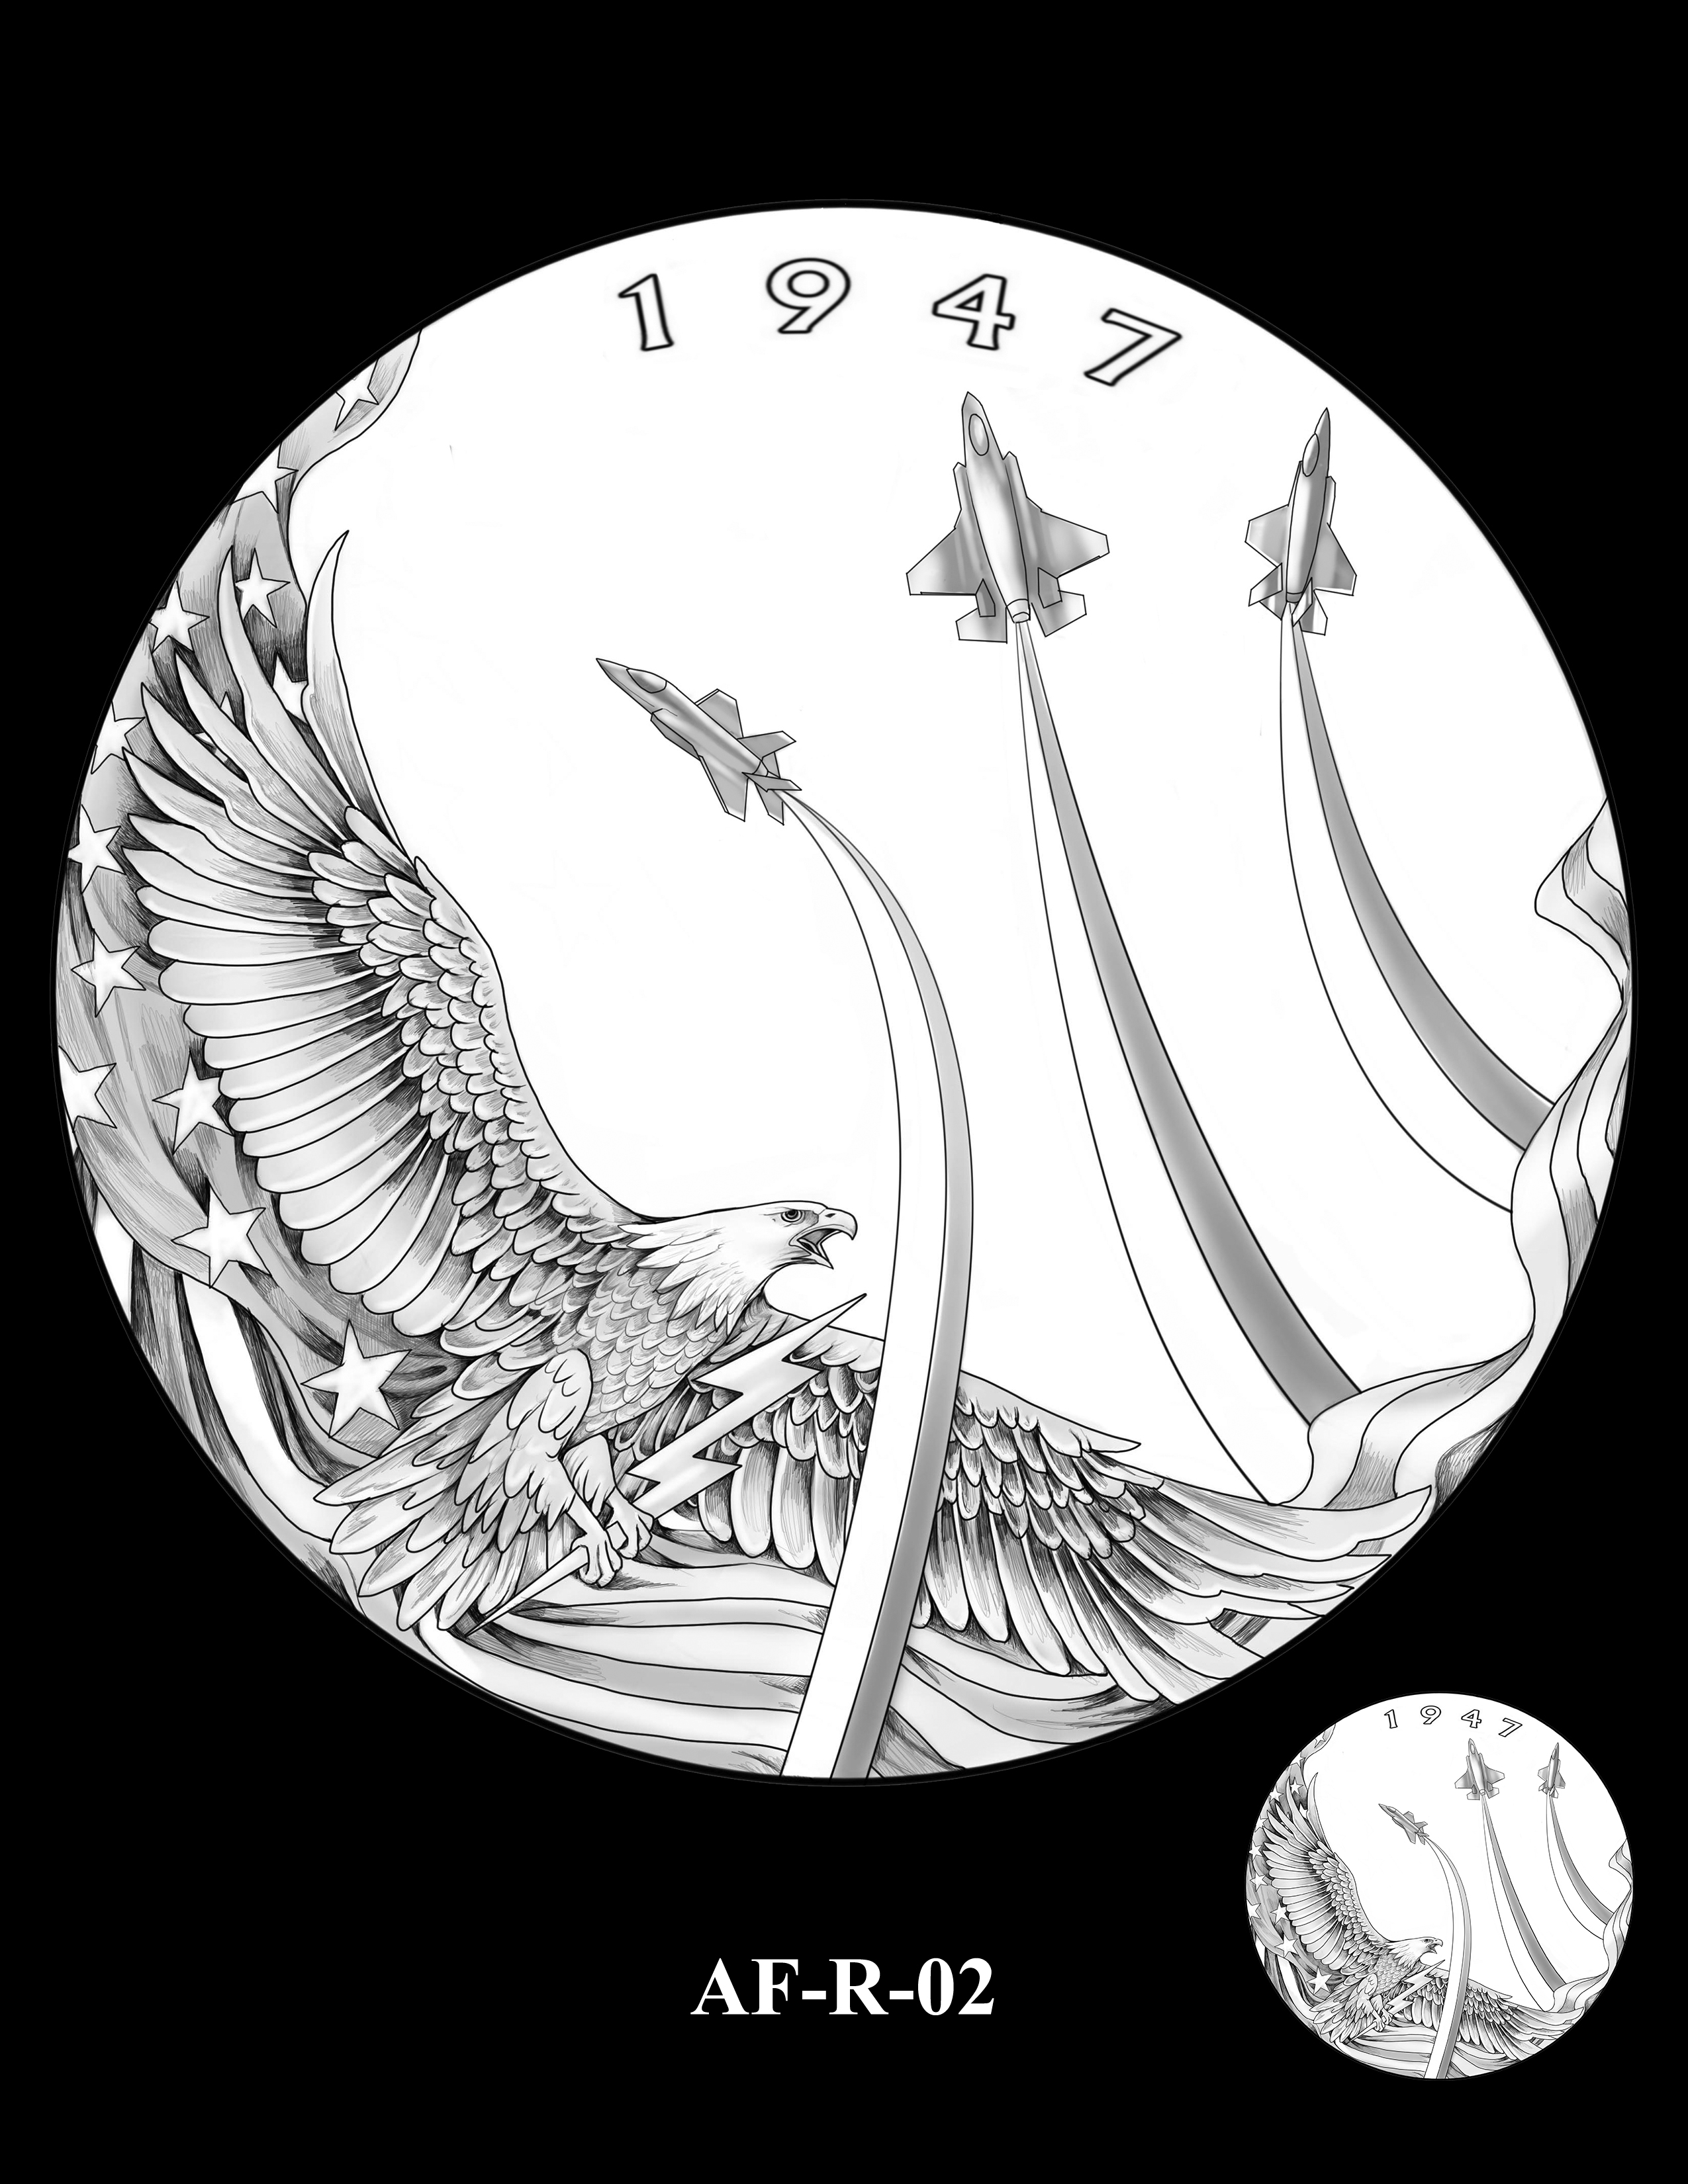 AF-R-02 -- Armed Forces Medal - Air Force